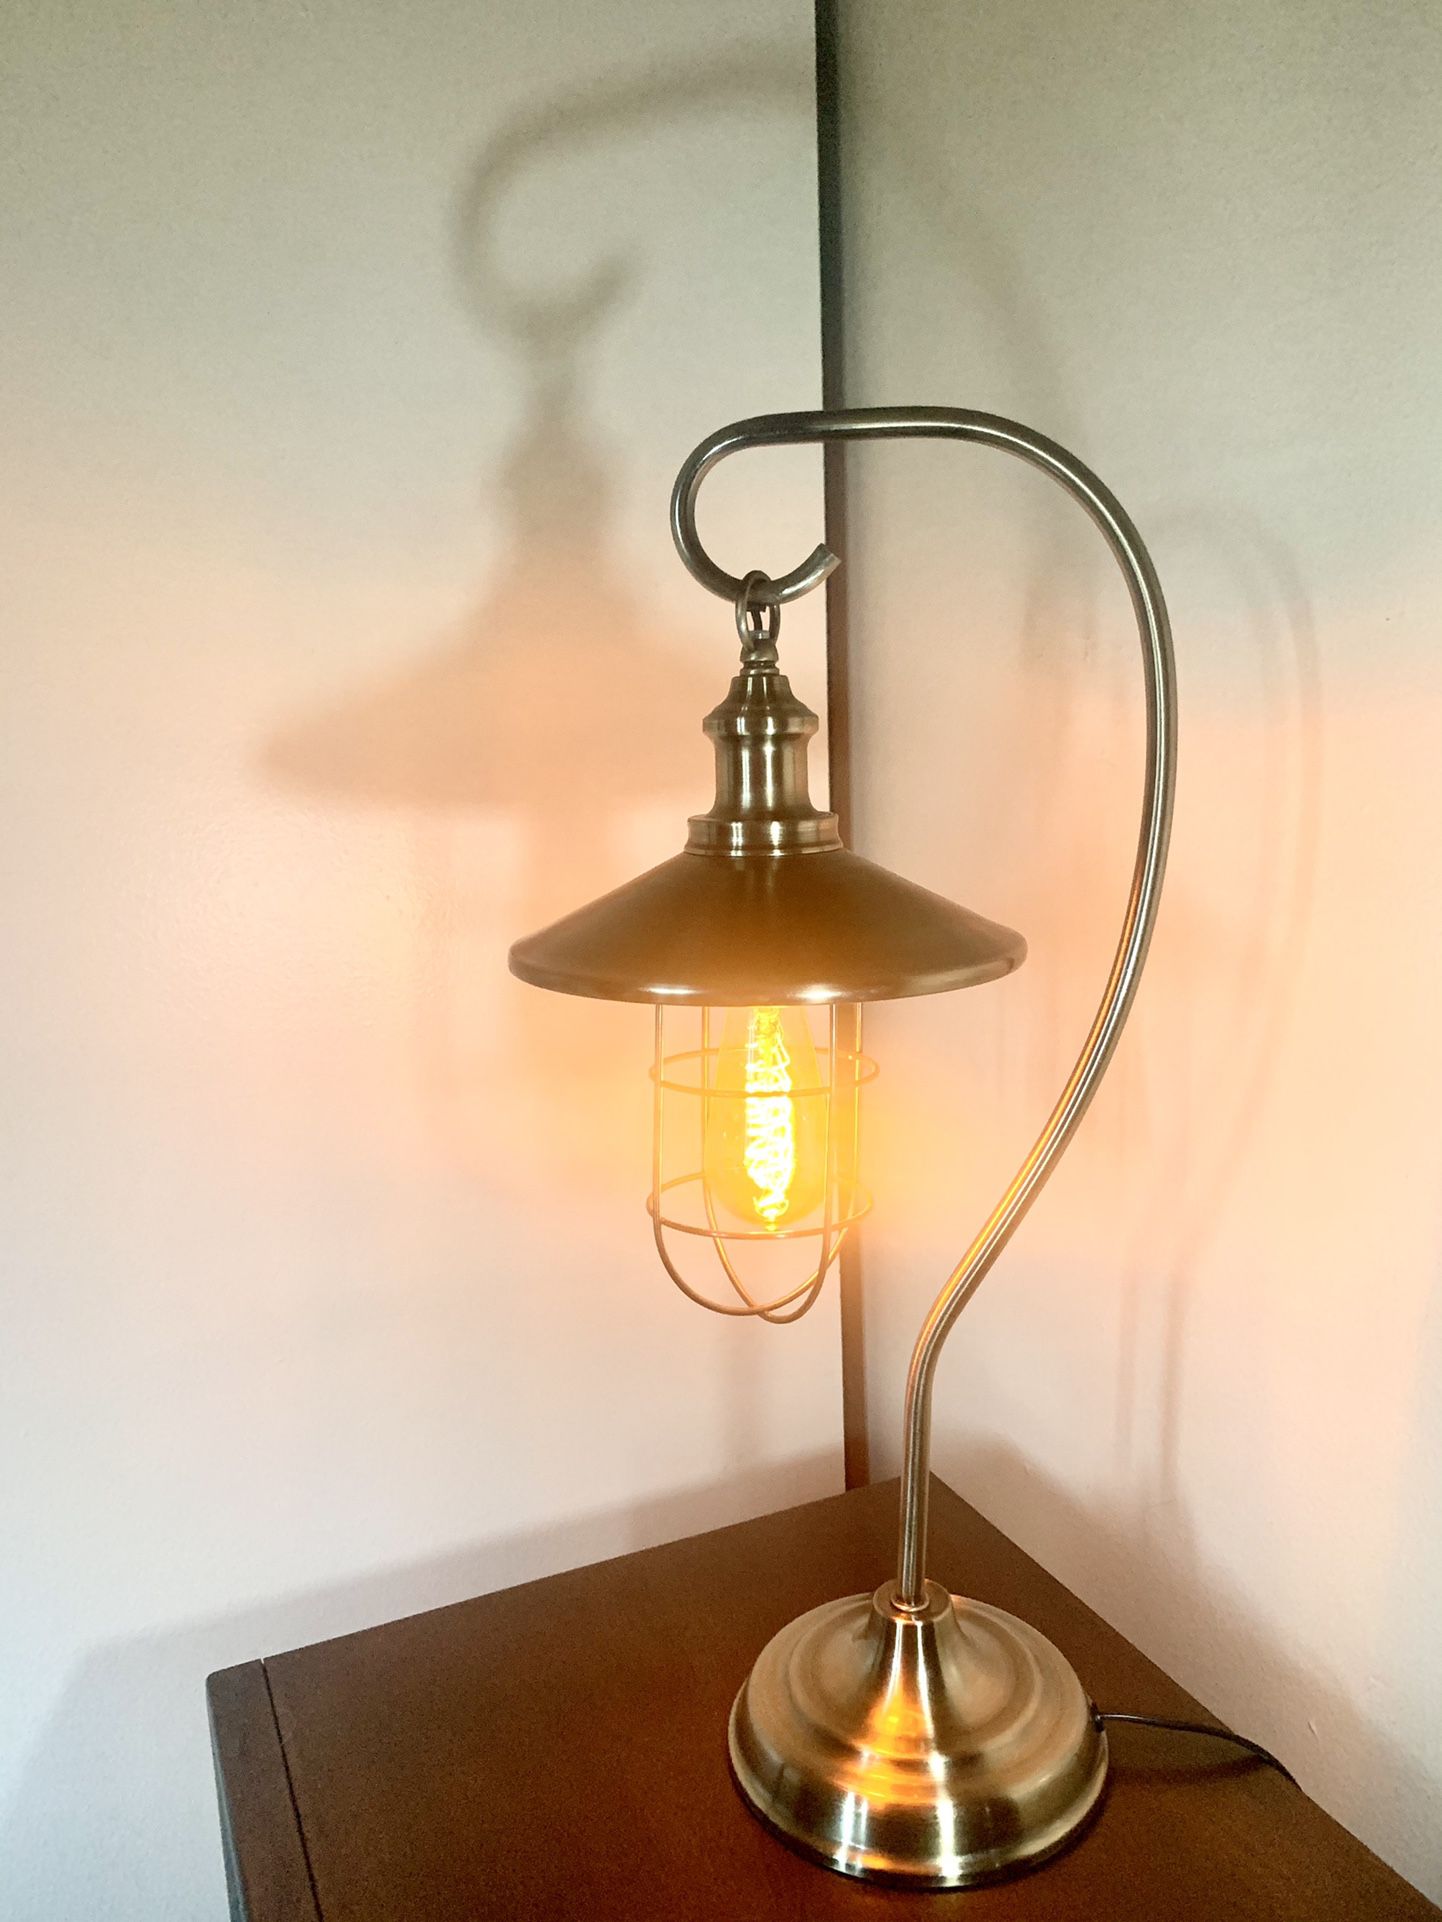 Kom langs om het te weten middag Alfabetische volgorde HEAVILY DISCOUNTED Antique Brass Table Lamp With Edison Bulb for Sale in  Riverside, CA - OfferUp